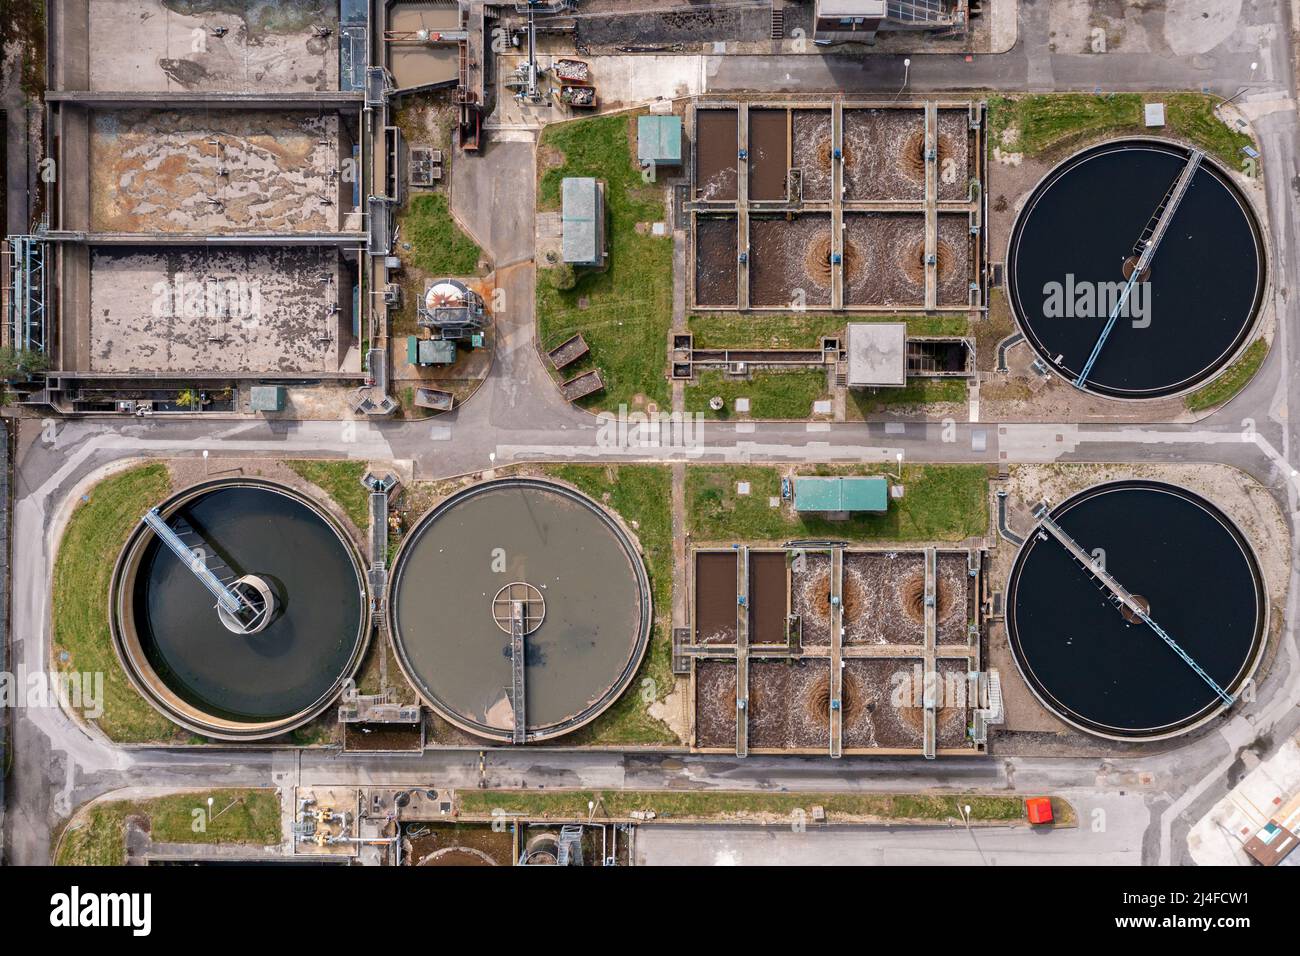 Vue aérienne d'Une usine de traitement de l'eau avec des effluents et des fosses septiques d'eau sale purifiées en eau potable Banque D'Images